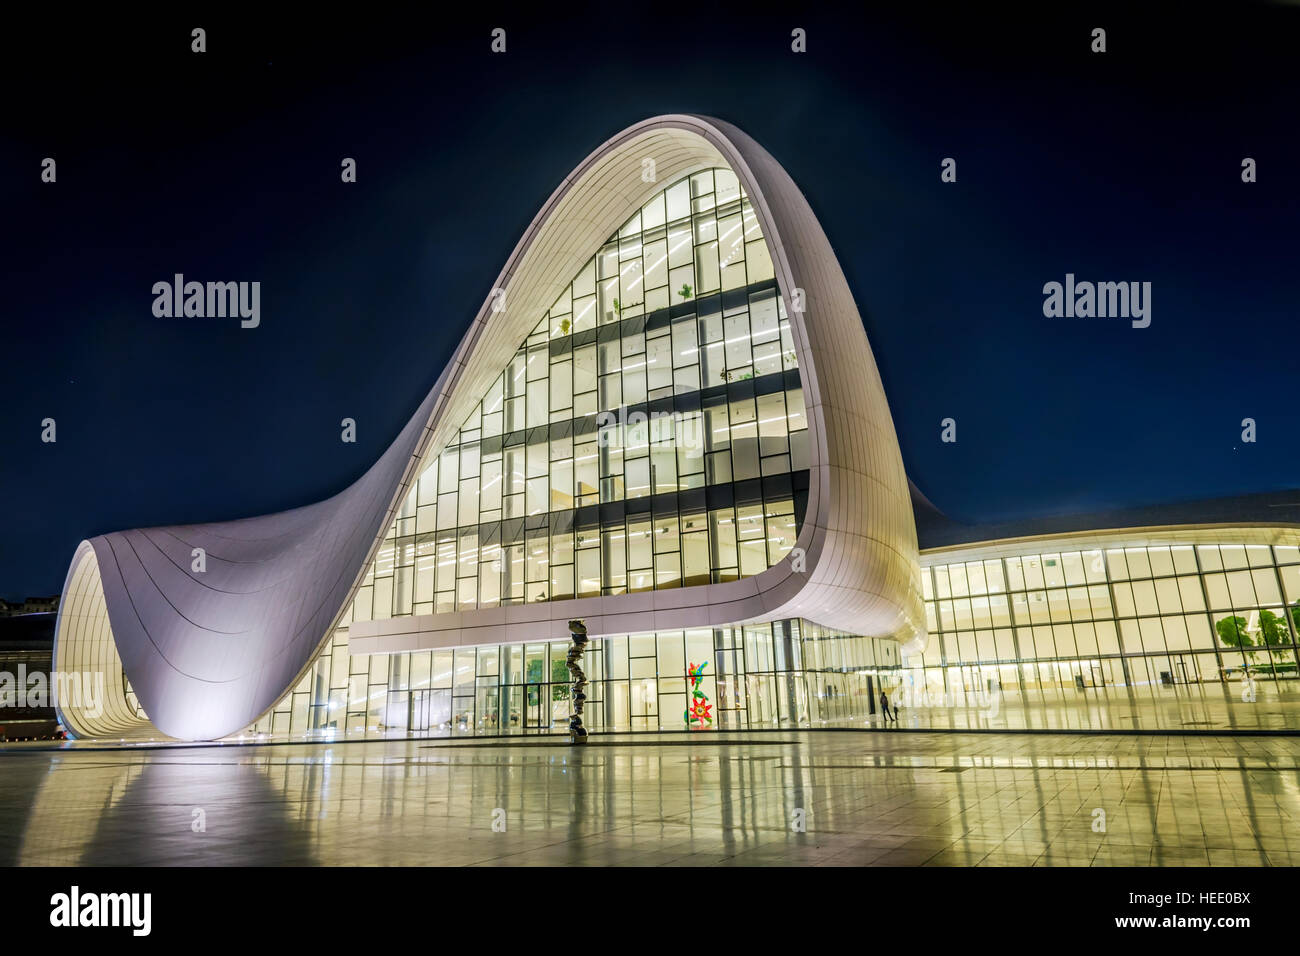 BAKU, ASERBAIDSCHAN - 22. SEPTEMBER 2016: Heydar Aliyev Center at Night entworfen von Zaha Hadid. Das Zentrum beherbergt einen Konferenzsaal, eine Galerie und ein Museum. Stockfoto